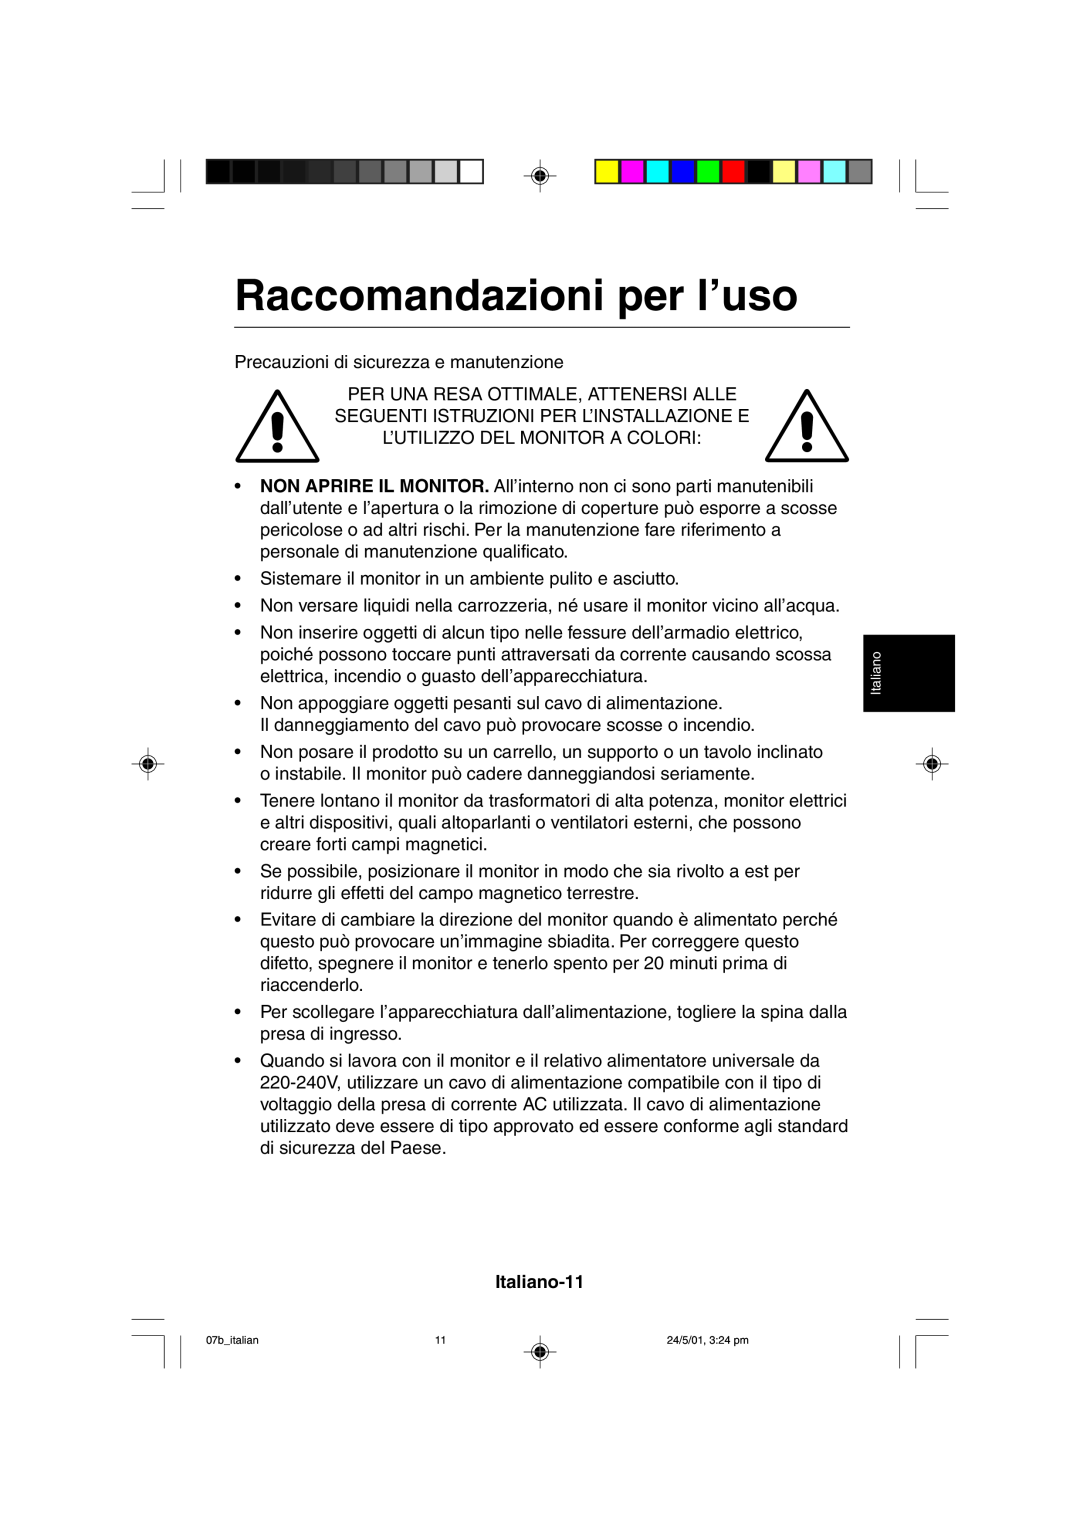 Mitsubishi Electronics M557 user manual Raccomandazioni per l’uso, Italiano-11 